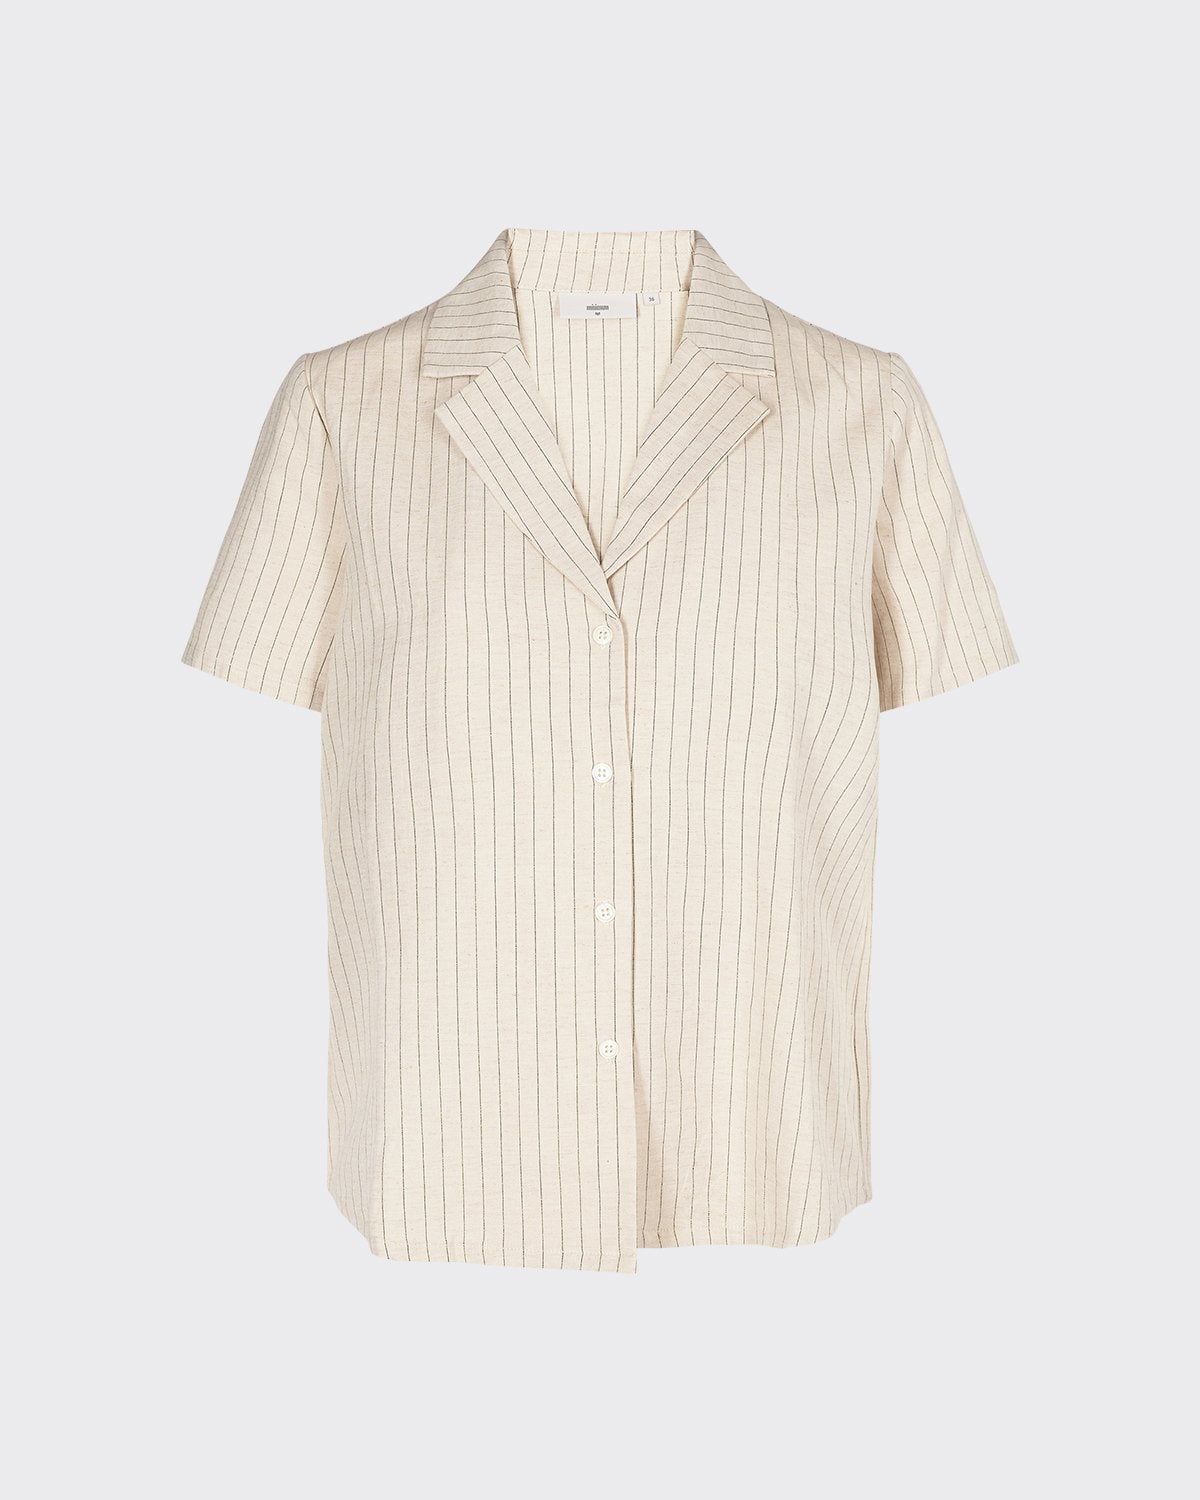 Minimum - Cathia 6610 Short Sleeved Shirt #Color_Broken White